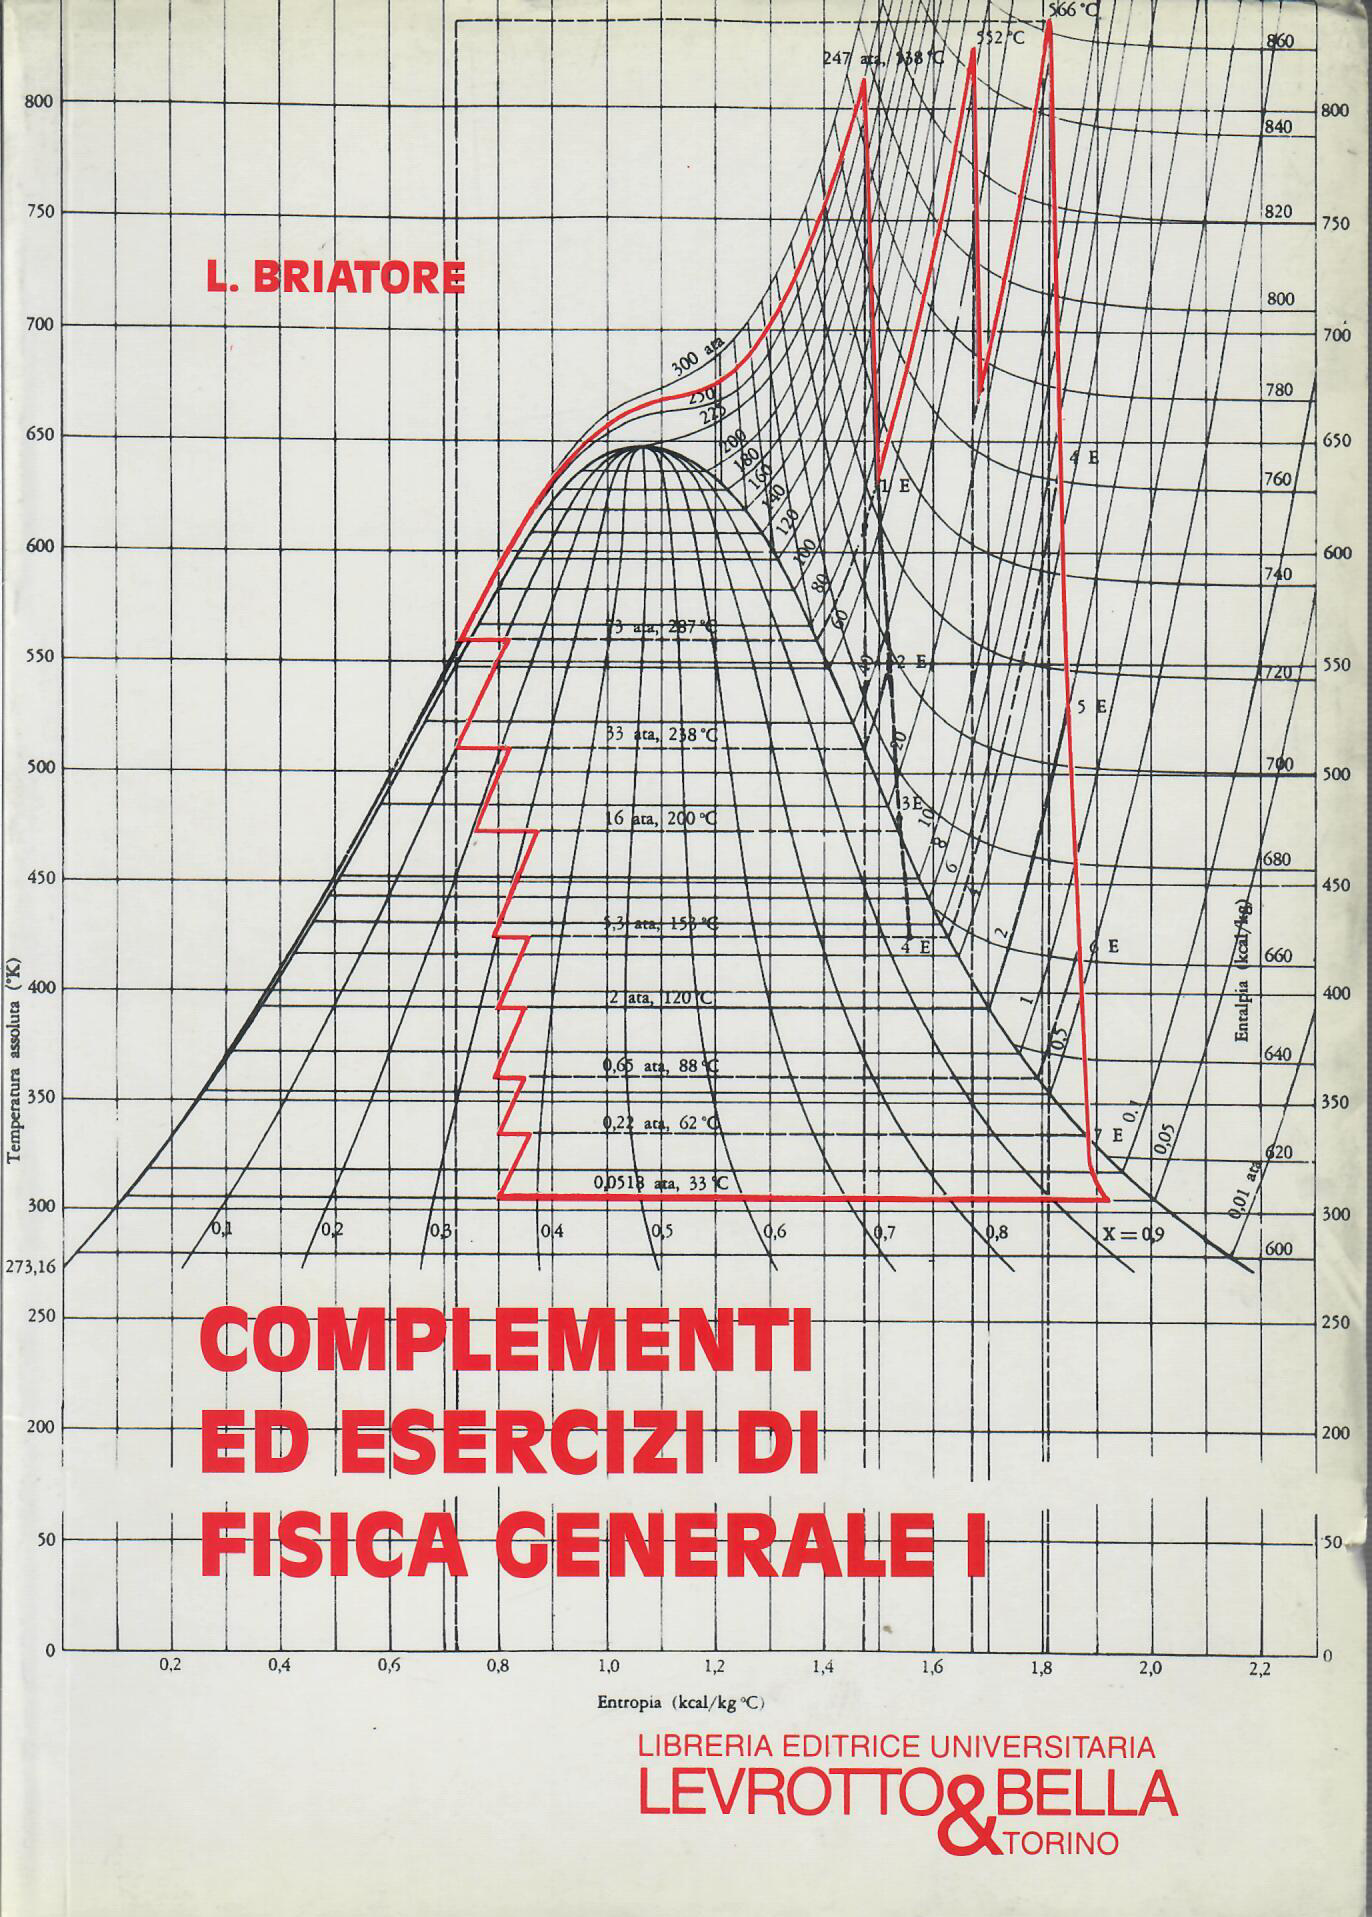 COMPLEMENTI ED ESERCIZI DI FISICA GENERALE 1-Levrotto & Bella - Libreria  Editrice Universitaria